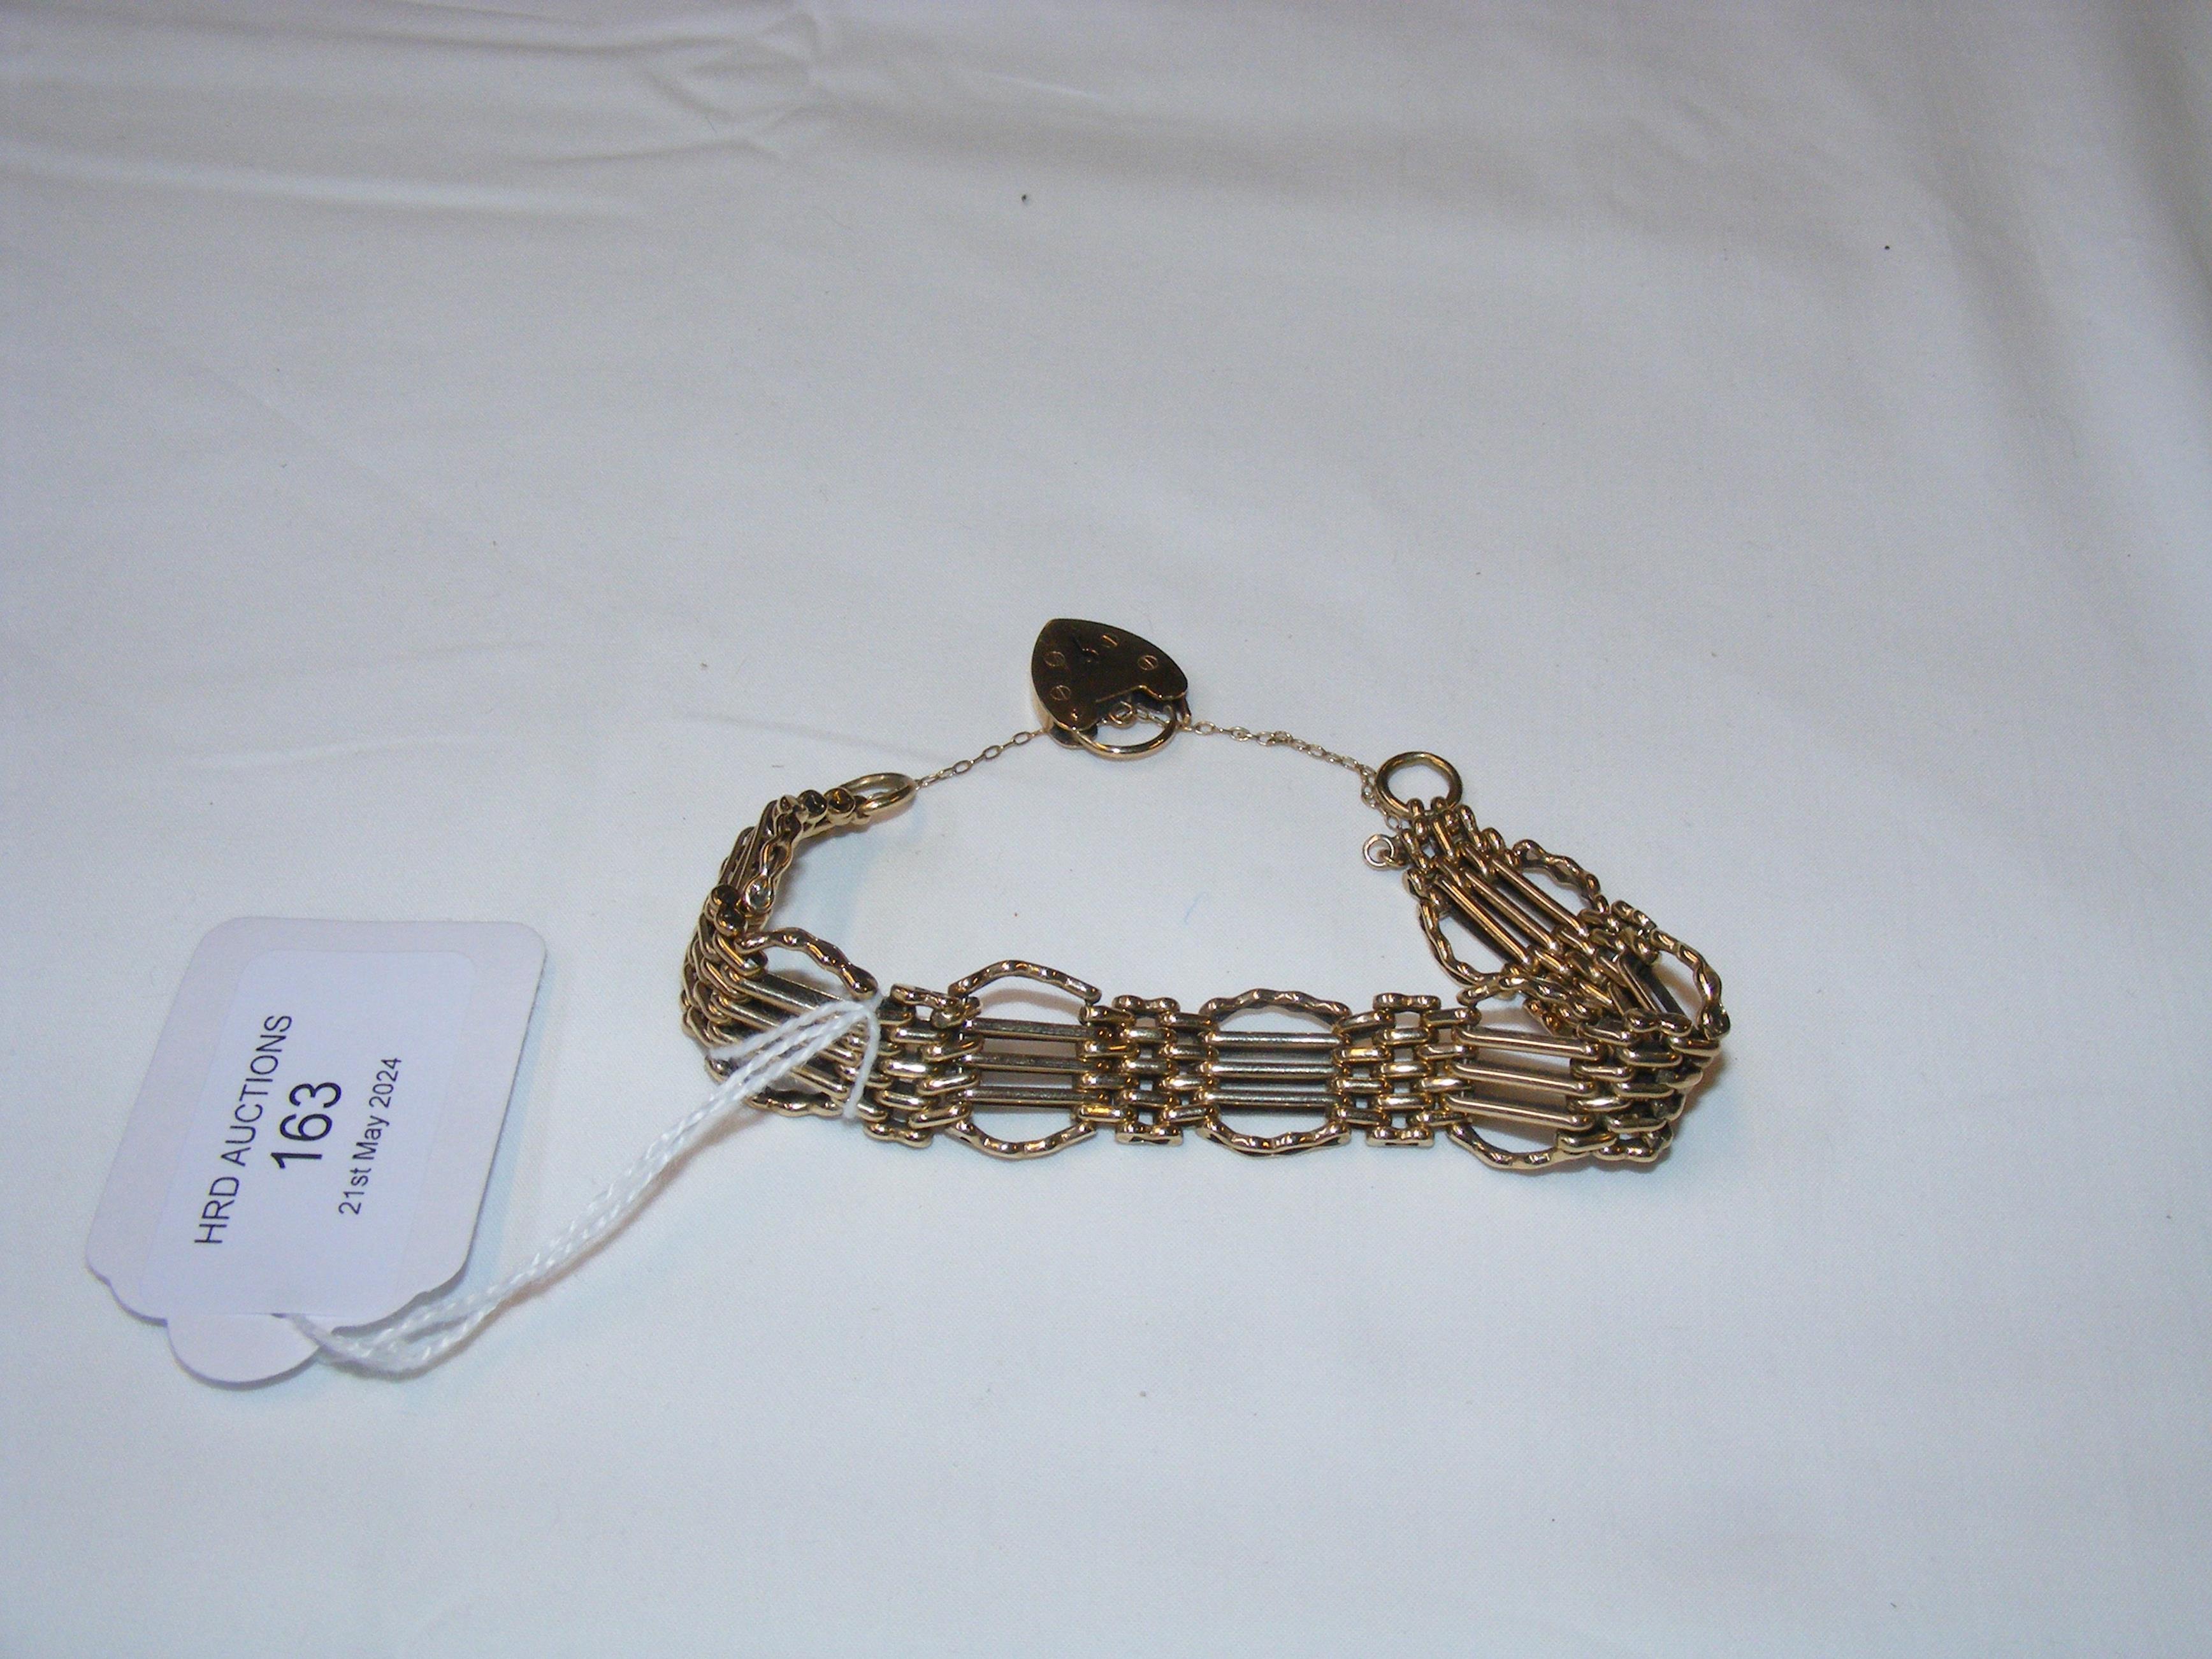 A 9ct gold gate bracelet